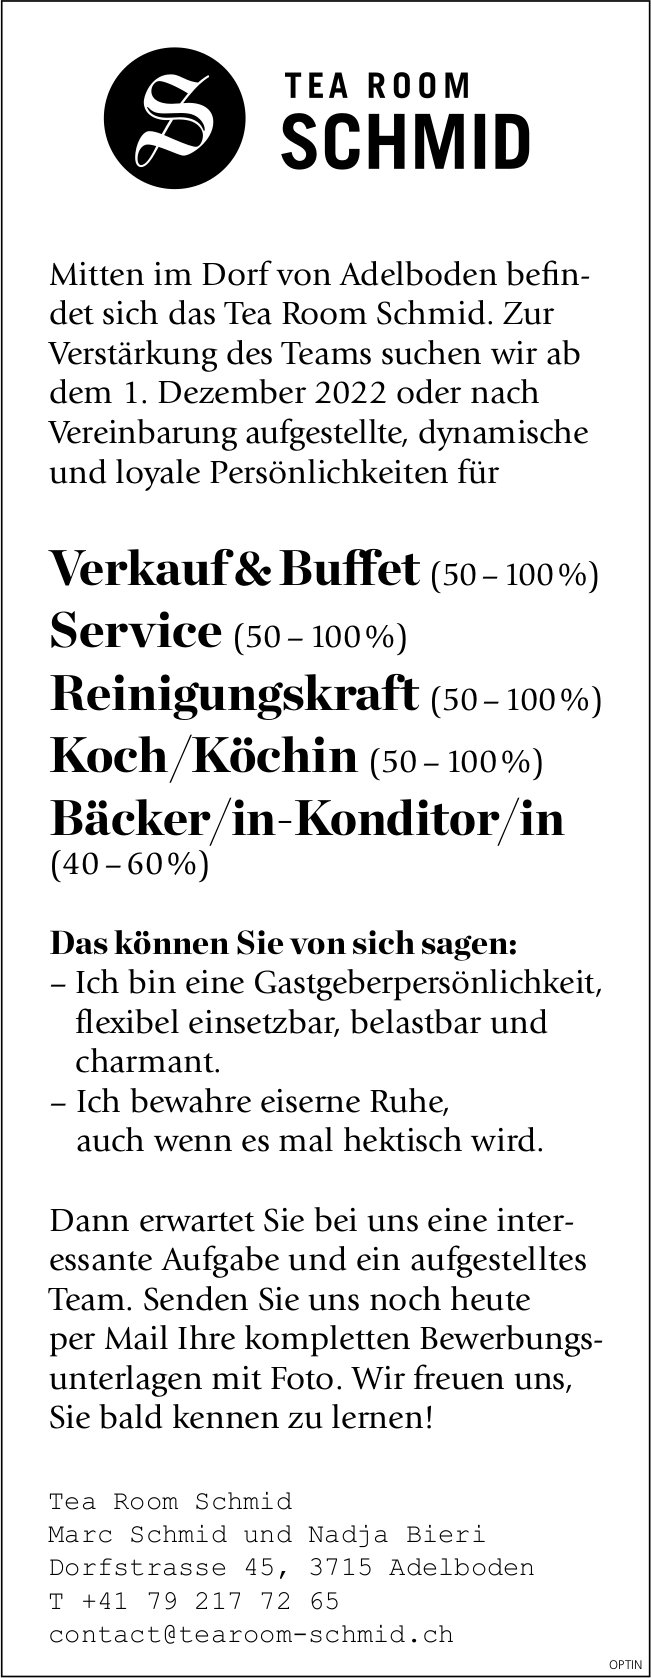 Verkauf & Buffet, Service,  Reinigungskraft,  Koch/Köchin und Bäcker/in-Konditor/in, Tea Room Schmid, Adelboden,  gesucht